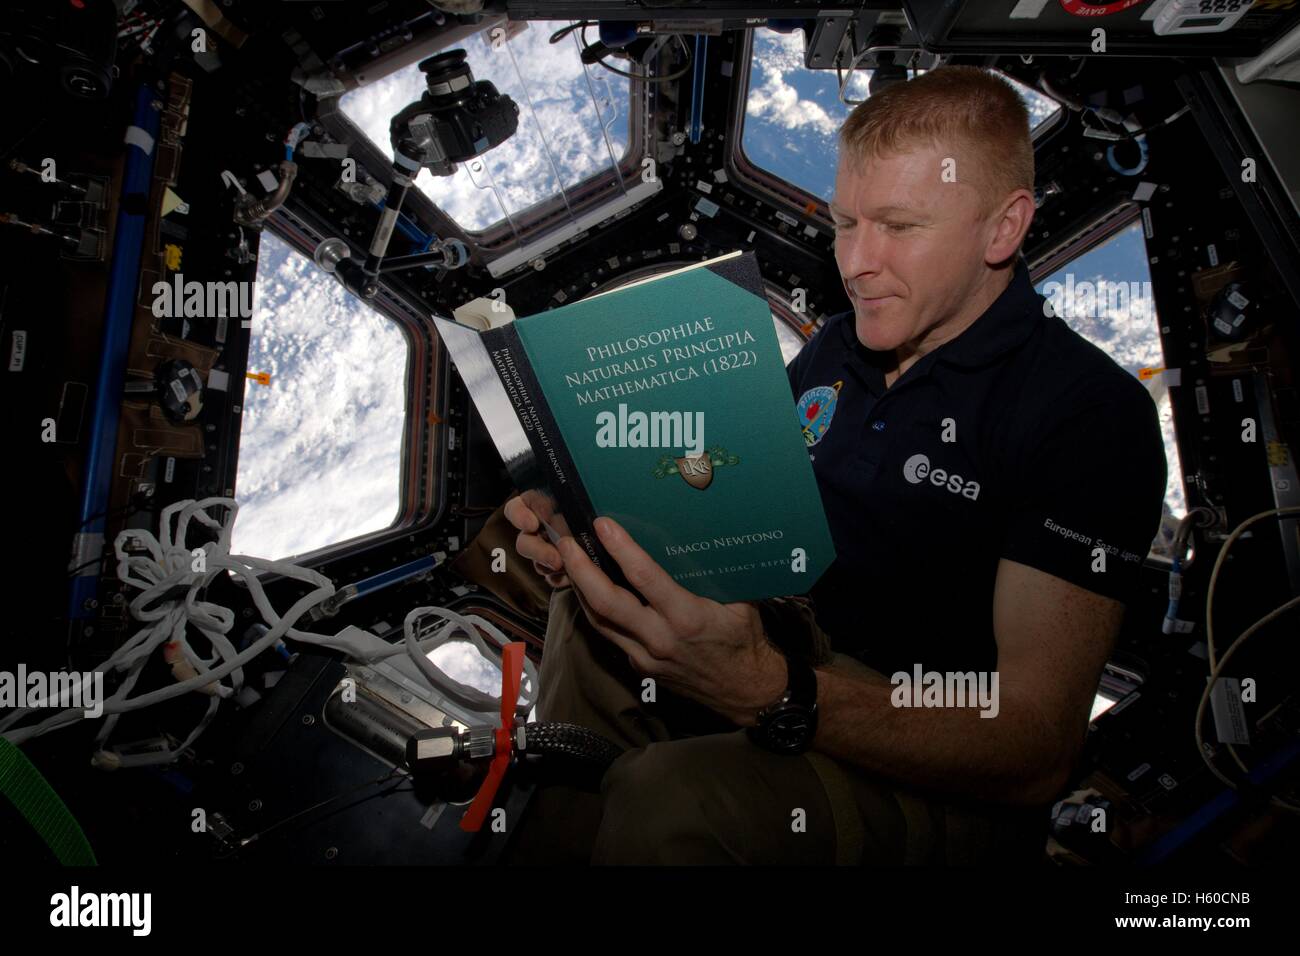 La NASA Stazione Spaziale Internazionale Expedition 46 astronauta britannico Tim Peake legge Principe Mathematica da Isaac Newton durante la Giornata Mondiale del libro 28 febbraio 2016 mentre in orbita intorno alla terra. Foto Stock